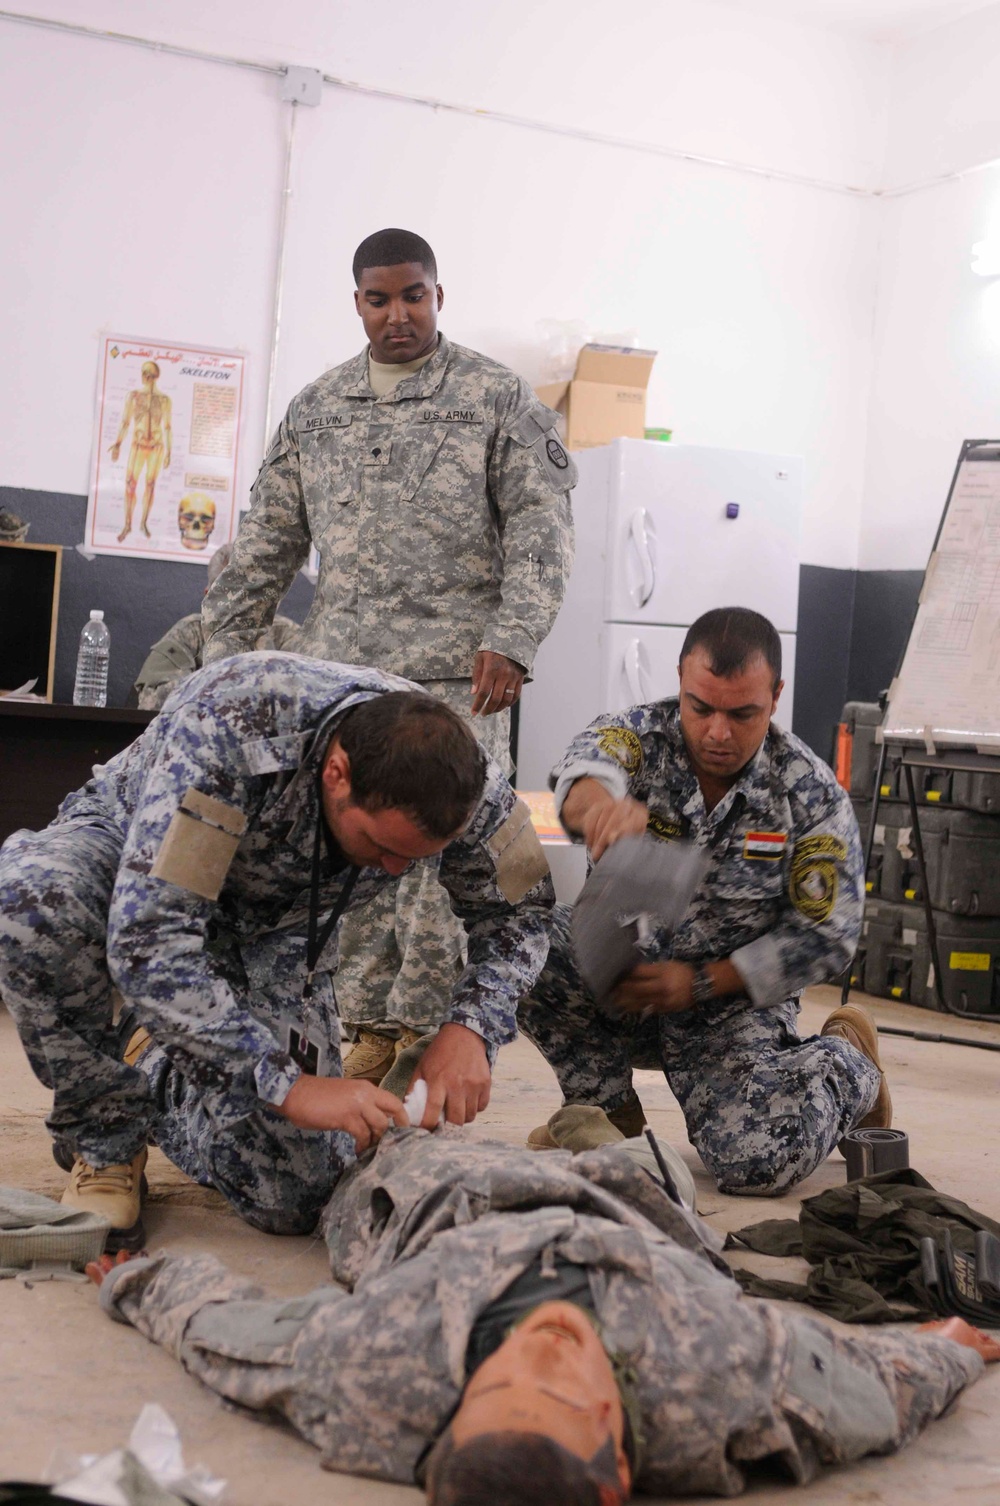 Iraqi medics learn trauma skills